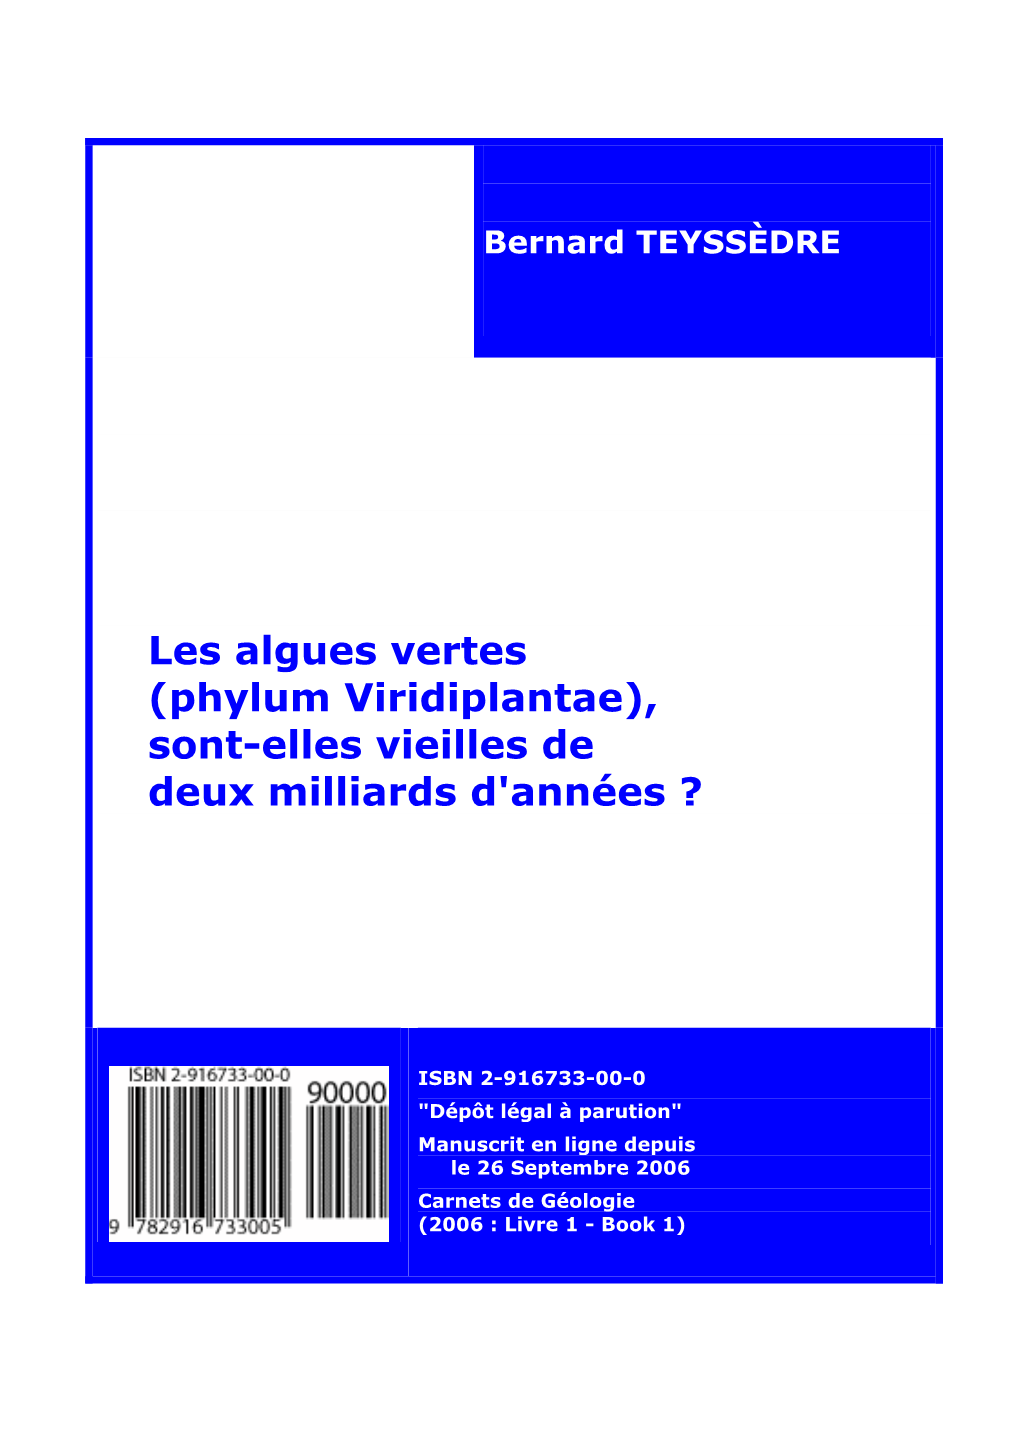 Les Algues Vertes (Phylum Viridiplantae) Sont-Elles Vieilles De Deux Milliards D'années ?.- Carnets De Géologie, Brest, Livre 2006/01 (CG2006 B01), 162 P., 7 Tableaux